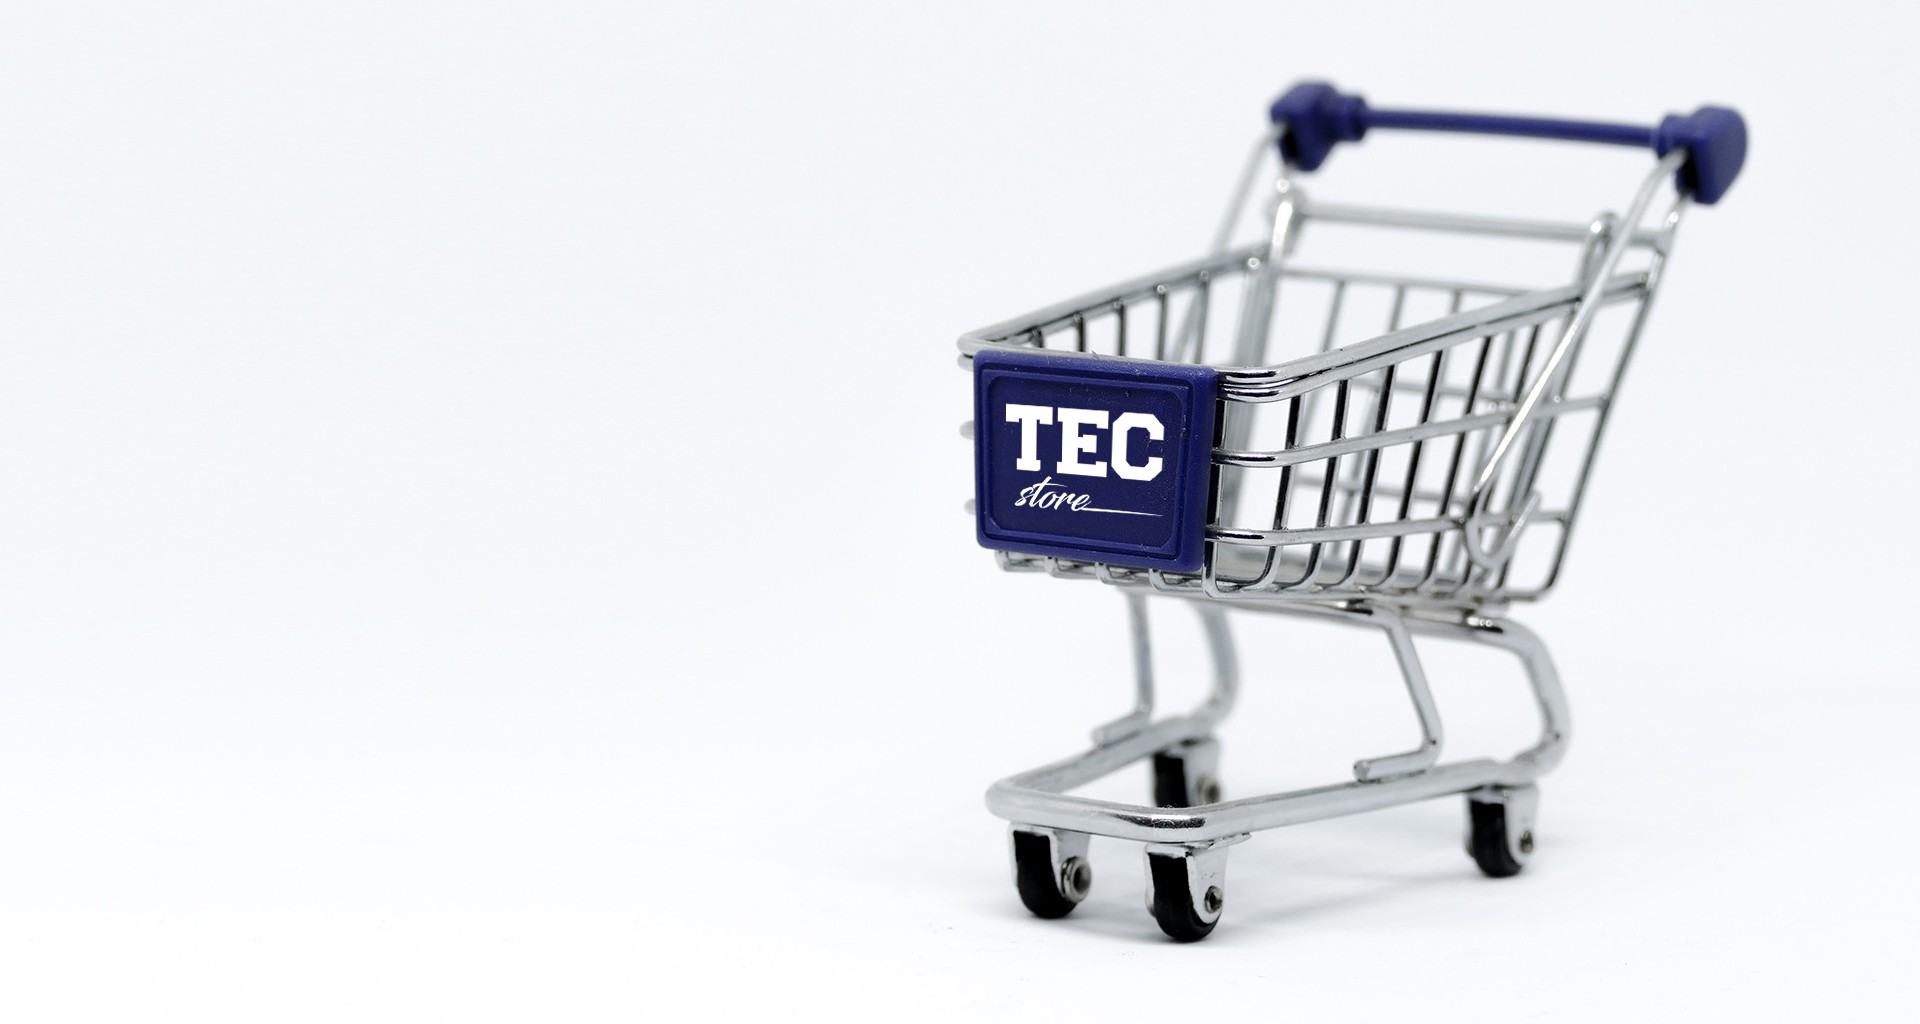 Carrito de compras con el logo de la Tec Store